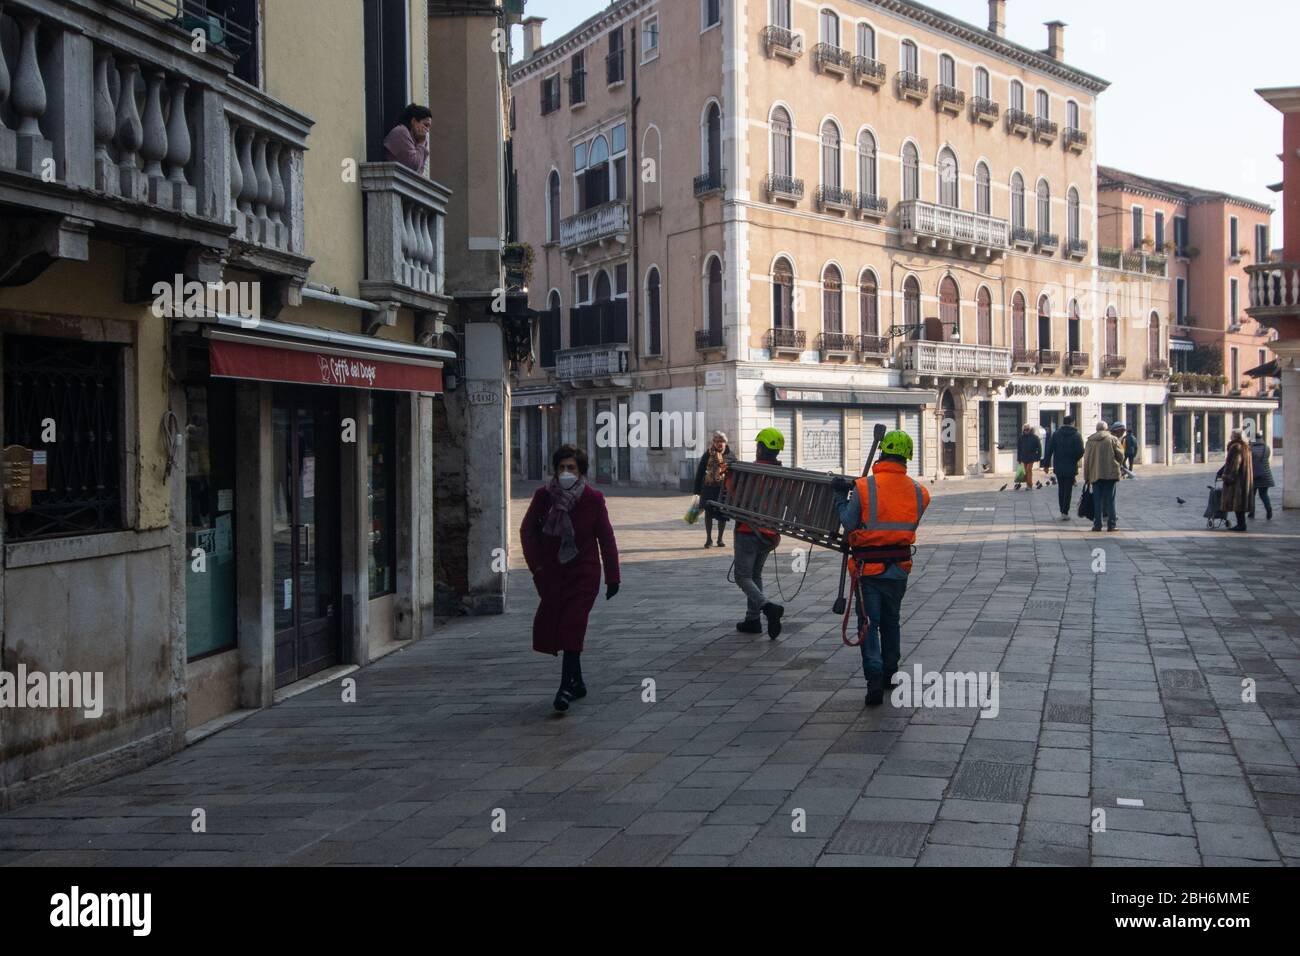 VENISE, ITALIE - AVRIL 2020: Les gens marchent dans une rue presque vide pendant le verrouillage national pour la pandémie de Covid-19. Banque D'Images